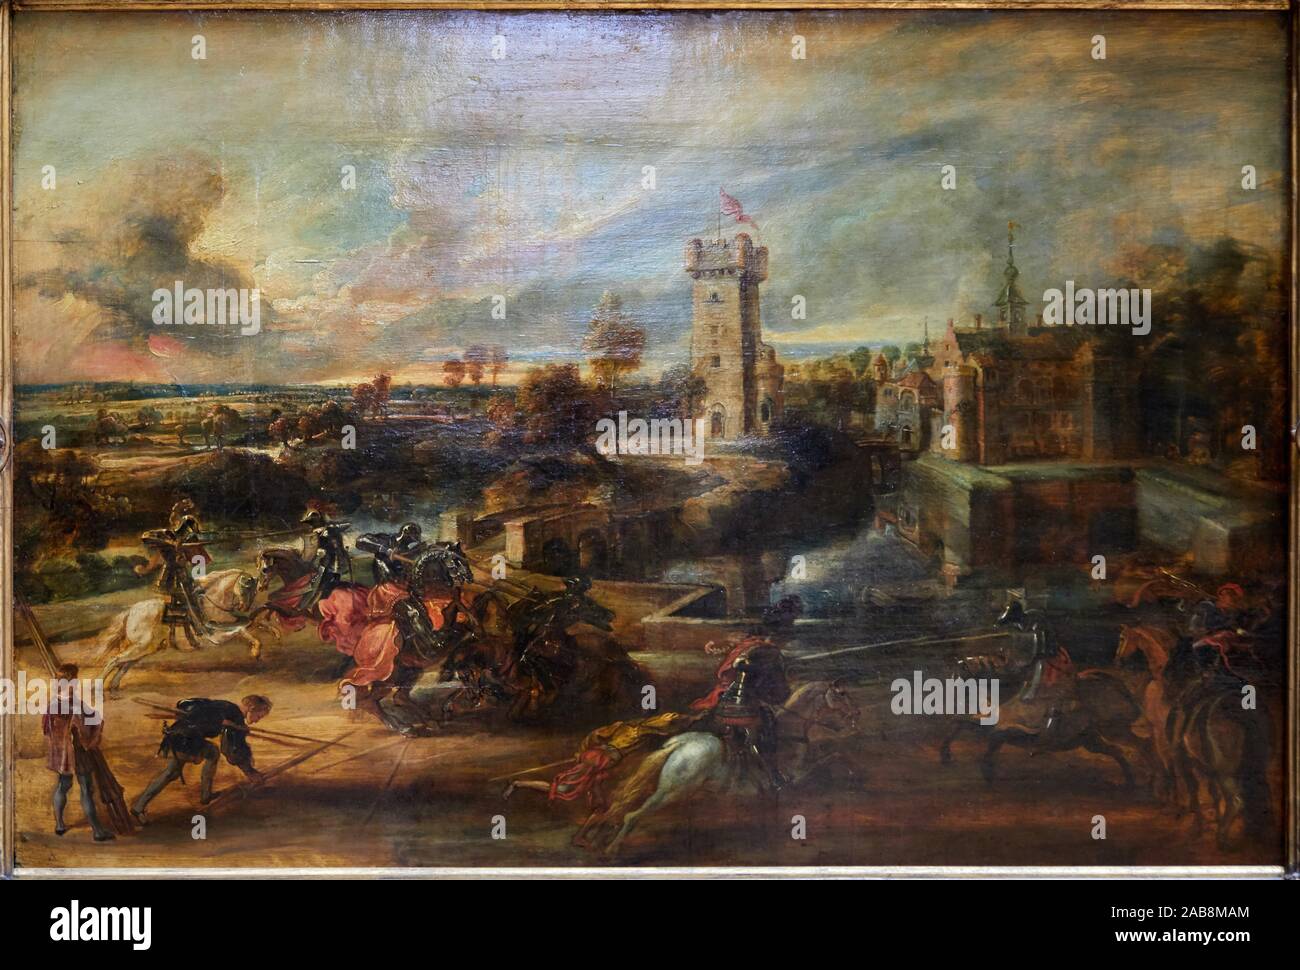 '''Medieval Tournament by the Moat of a Castle'', 1635-1640, Pierre Paul Rubens, Musée du Louvre, Paris, France, Europe Stock Photo